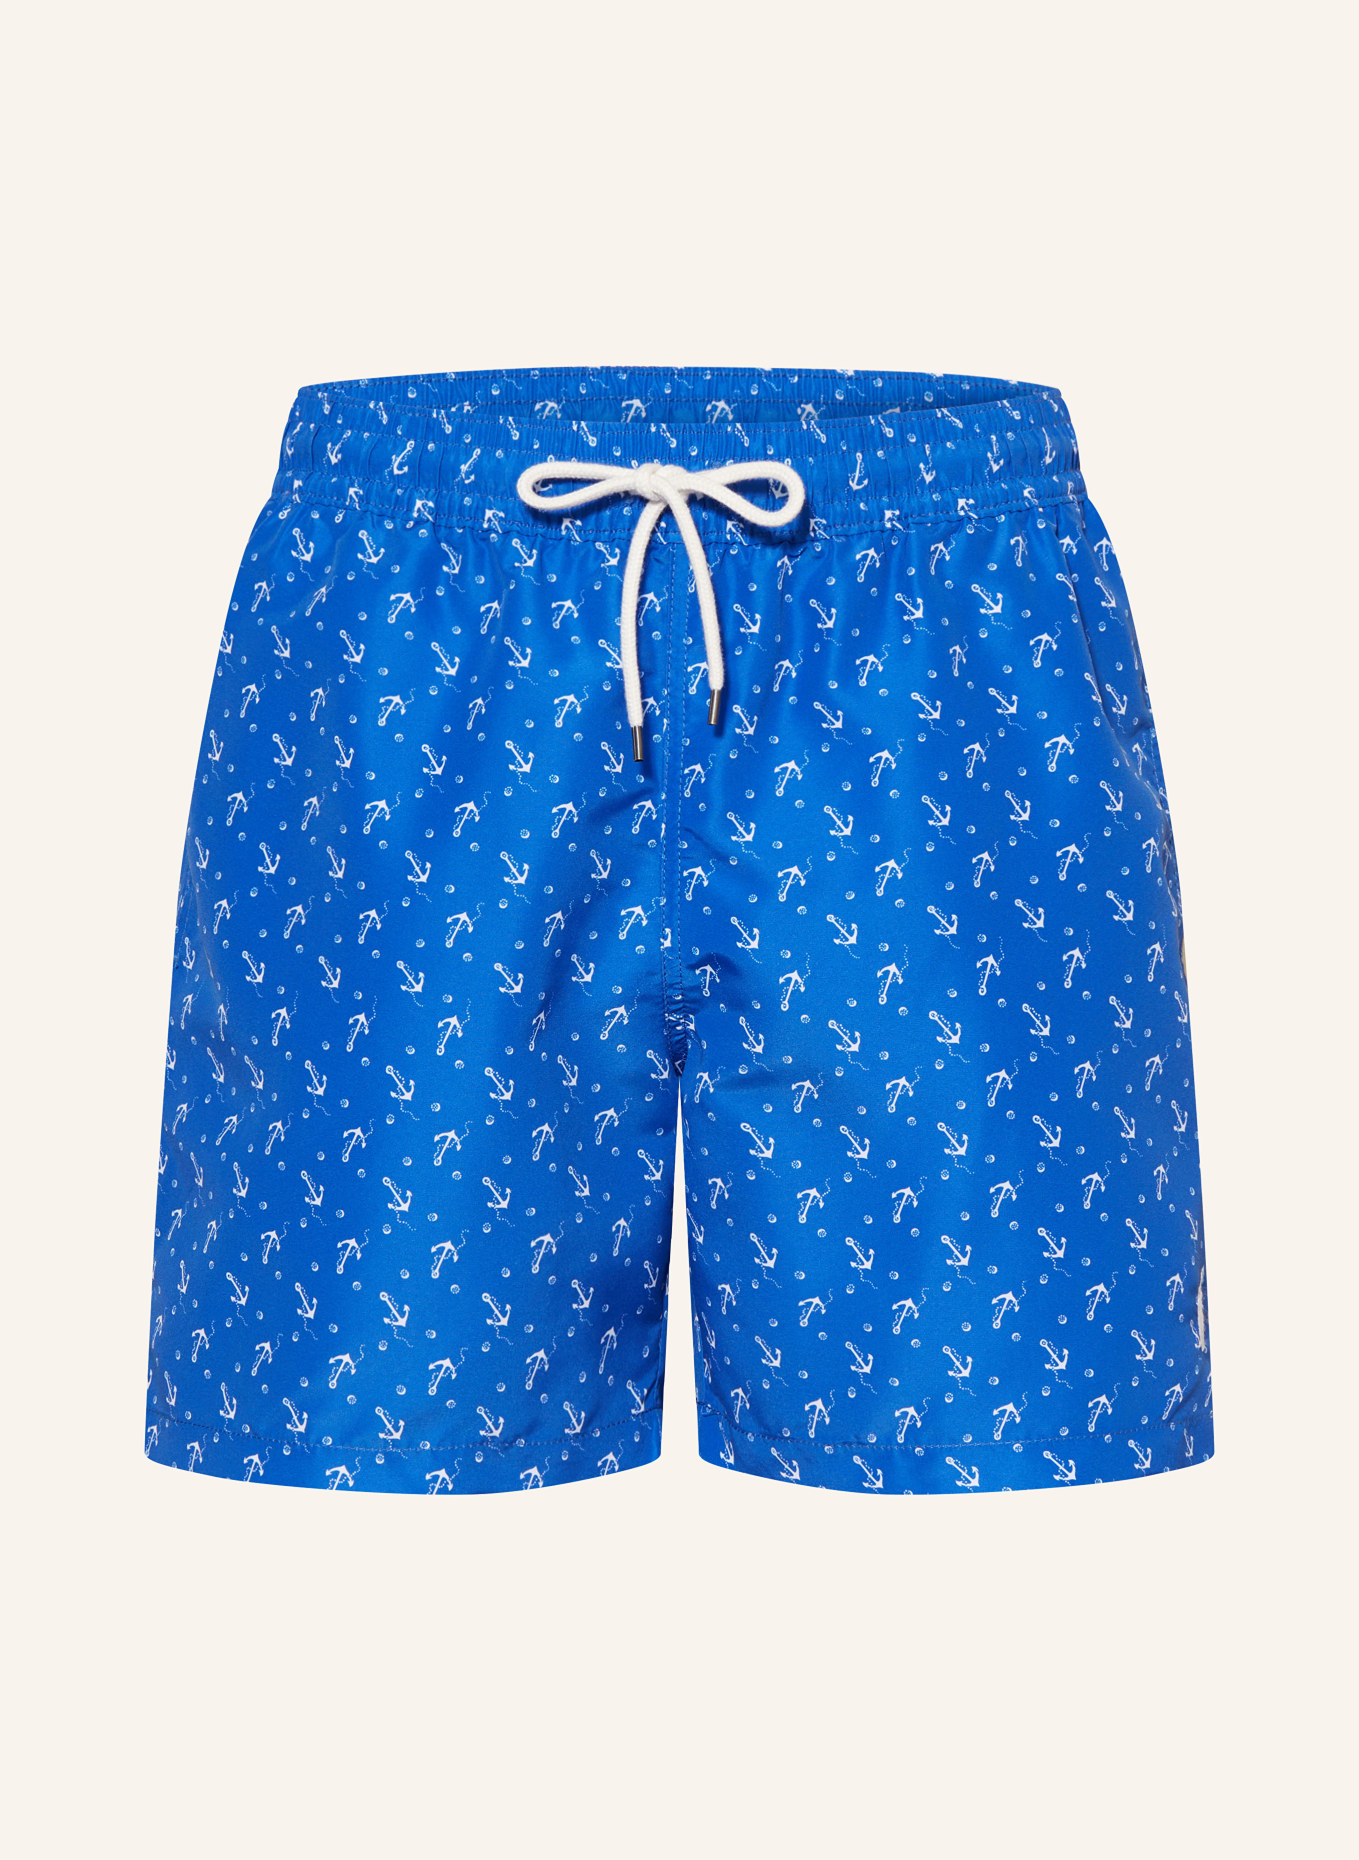 POLO RALPH LAUREN Swim shorts, Color: BLUE/ WHITE (Image 1)